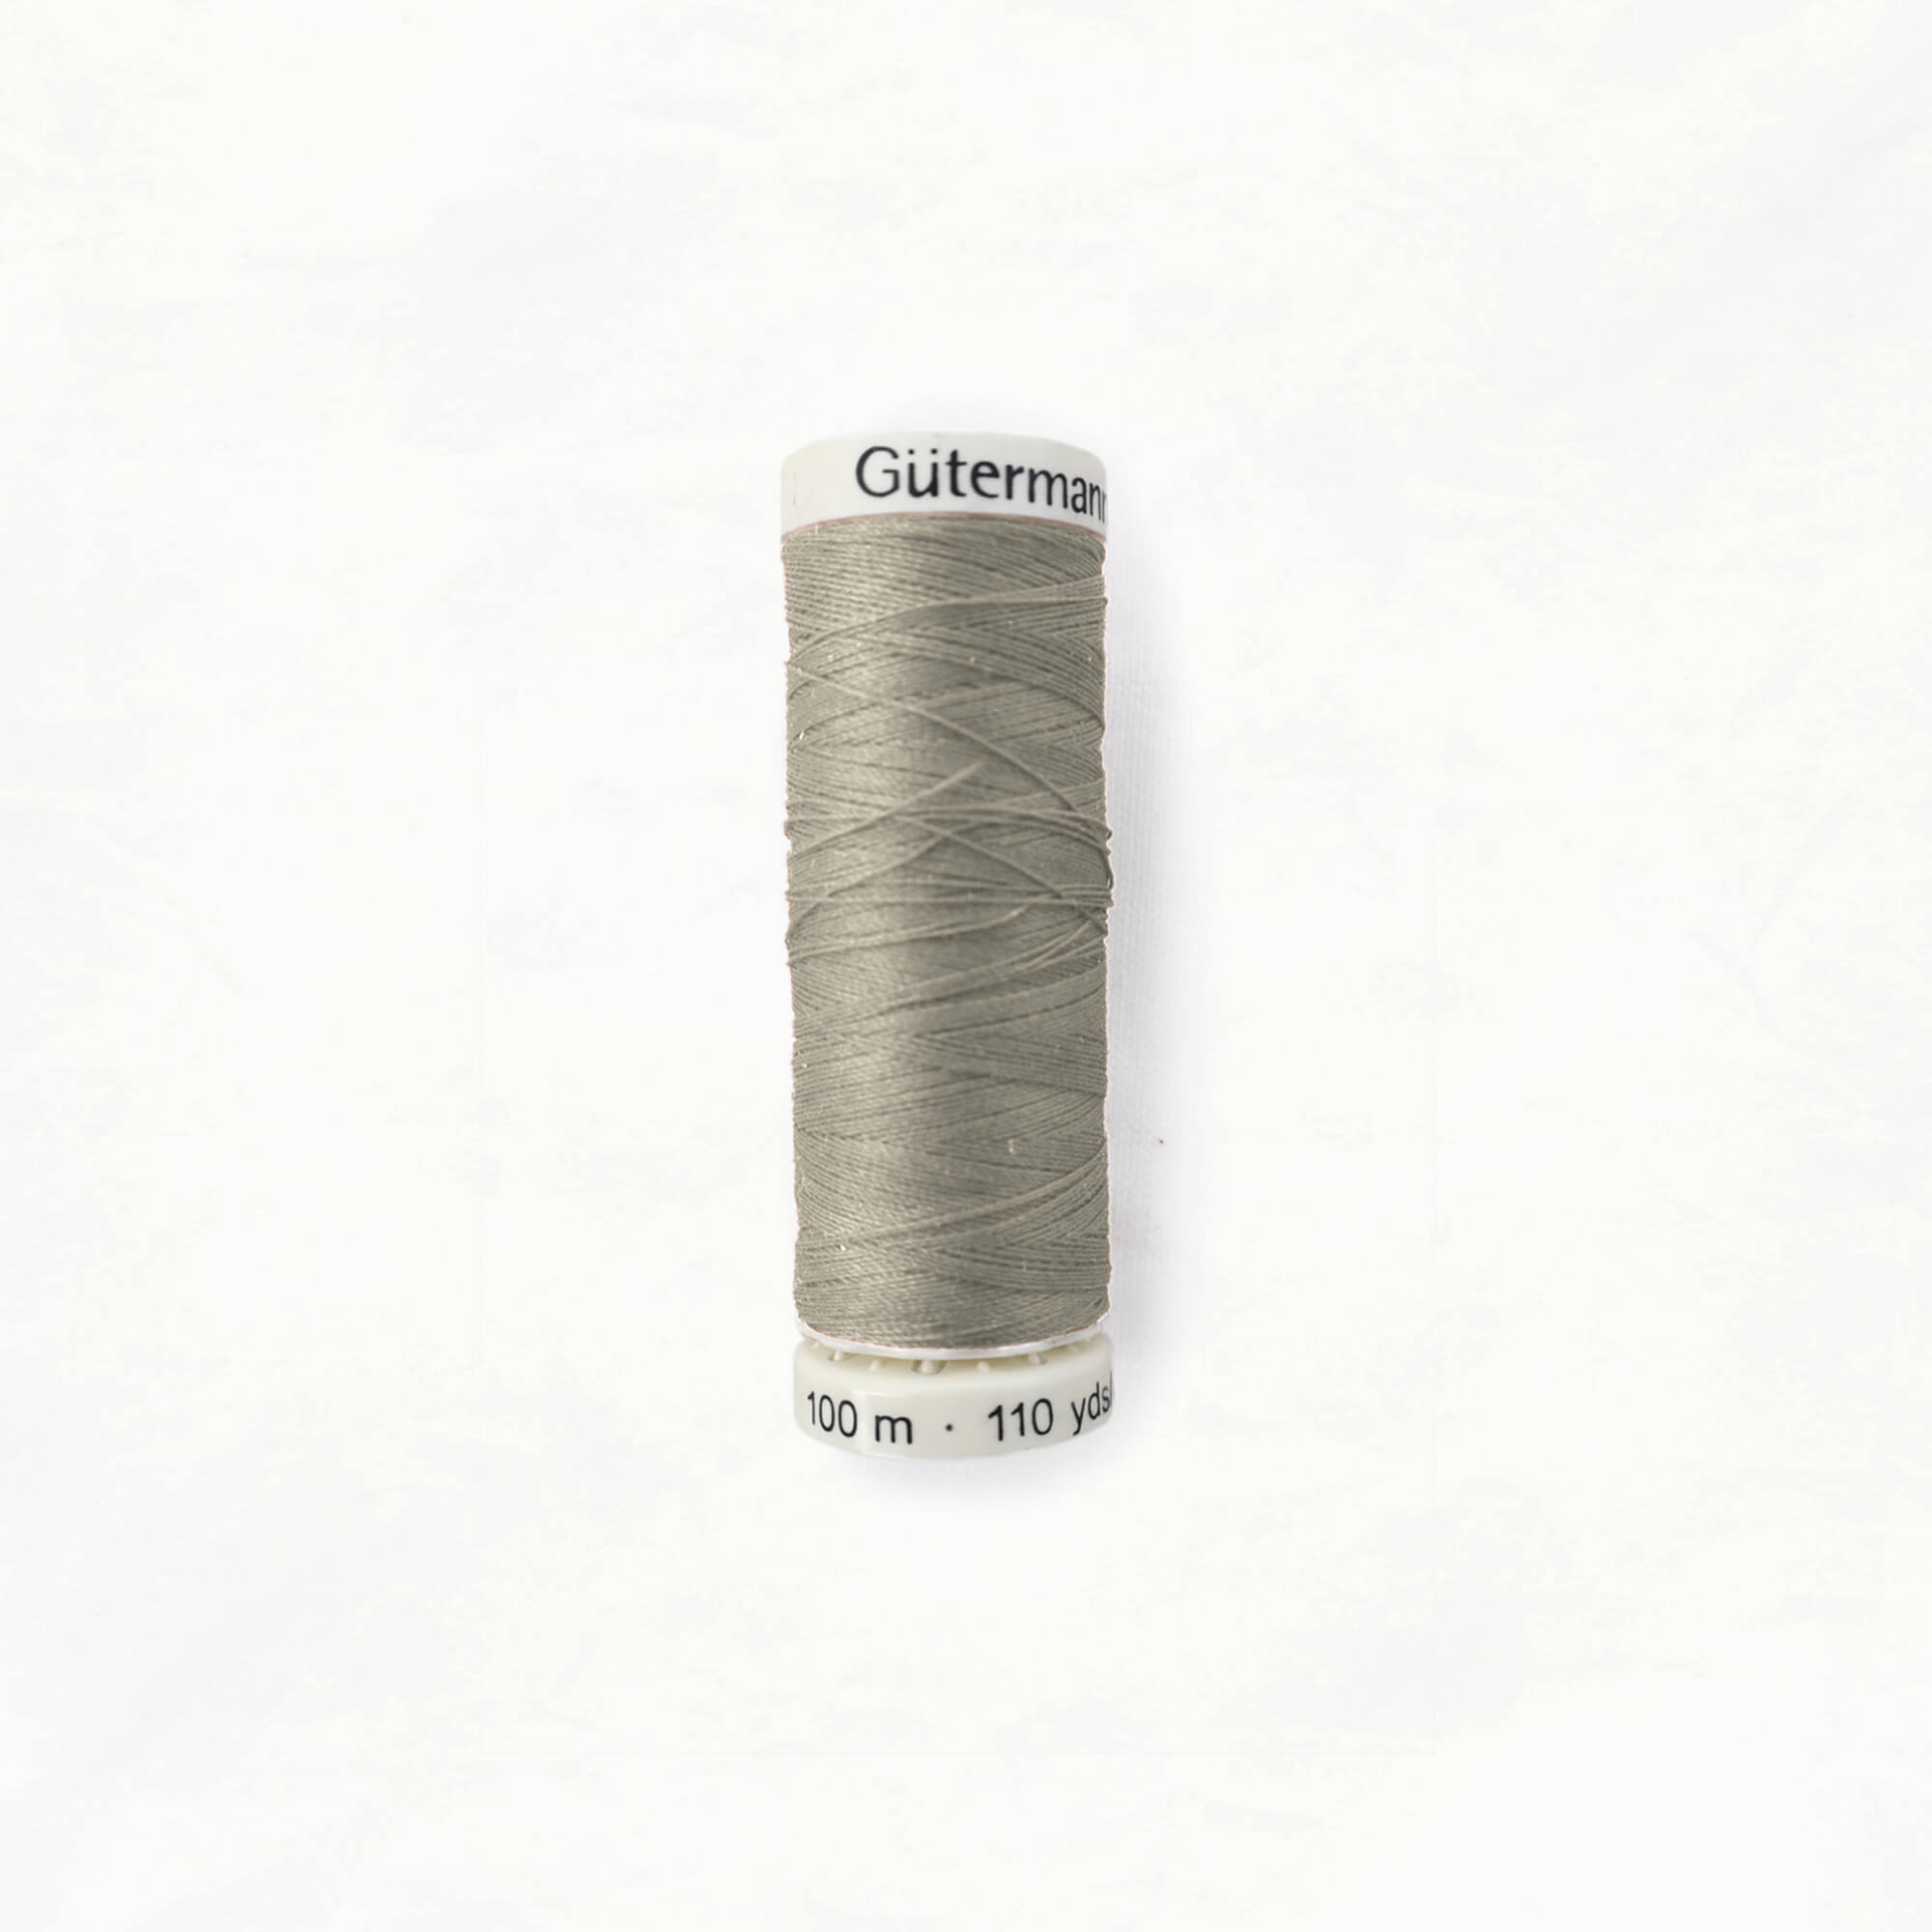 Gütermann Sewing Thread, 100m, Dark Brown - 280 - Hobiumyarns